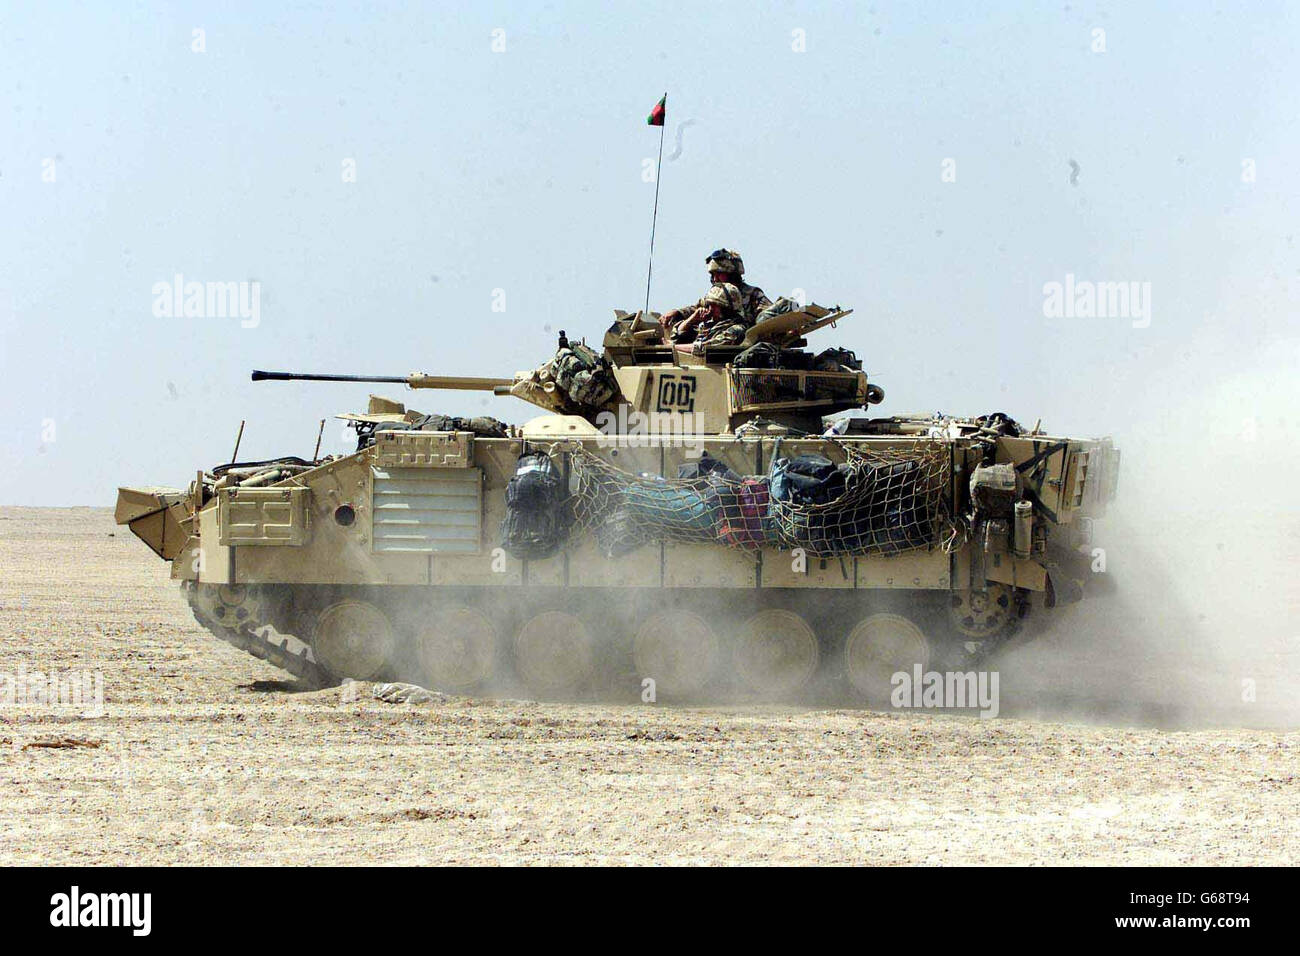 Royal Fusiliers in der Wüste von Kuwait. Bild zur Verfügung gestellt 27/03/03 von Mitgliedern des Royal Regiment of Fusiliers in der kuwaitischen Wüste. Stockfoto